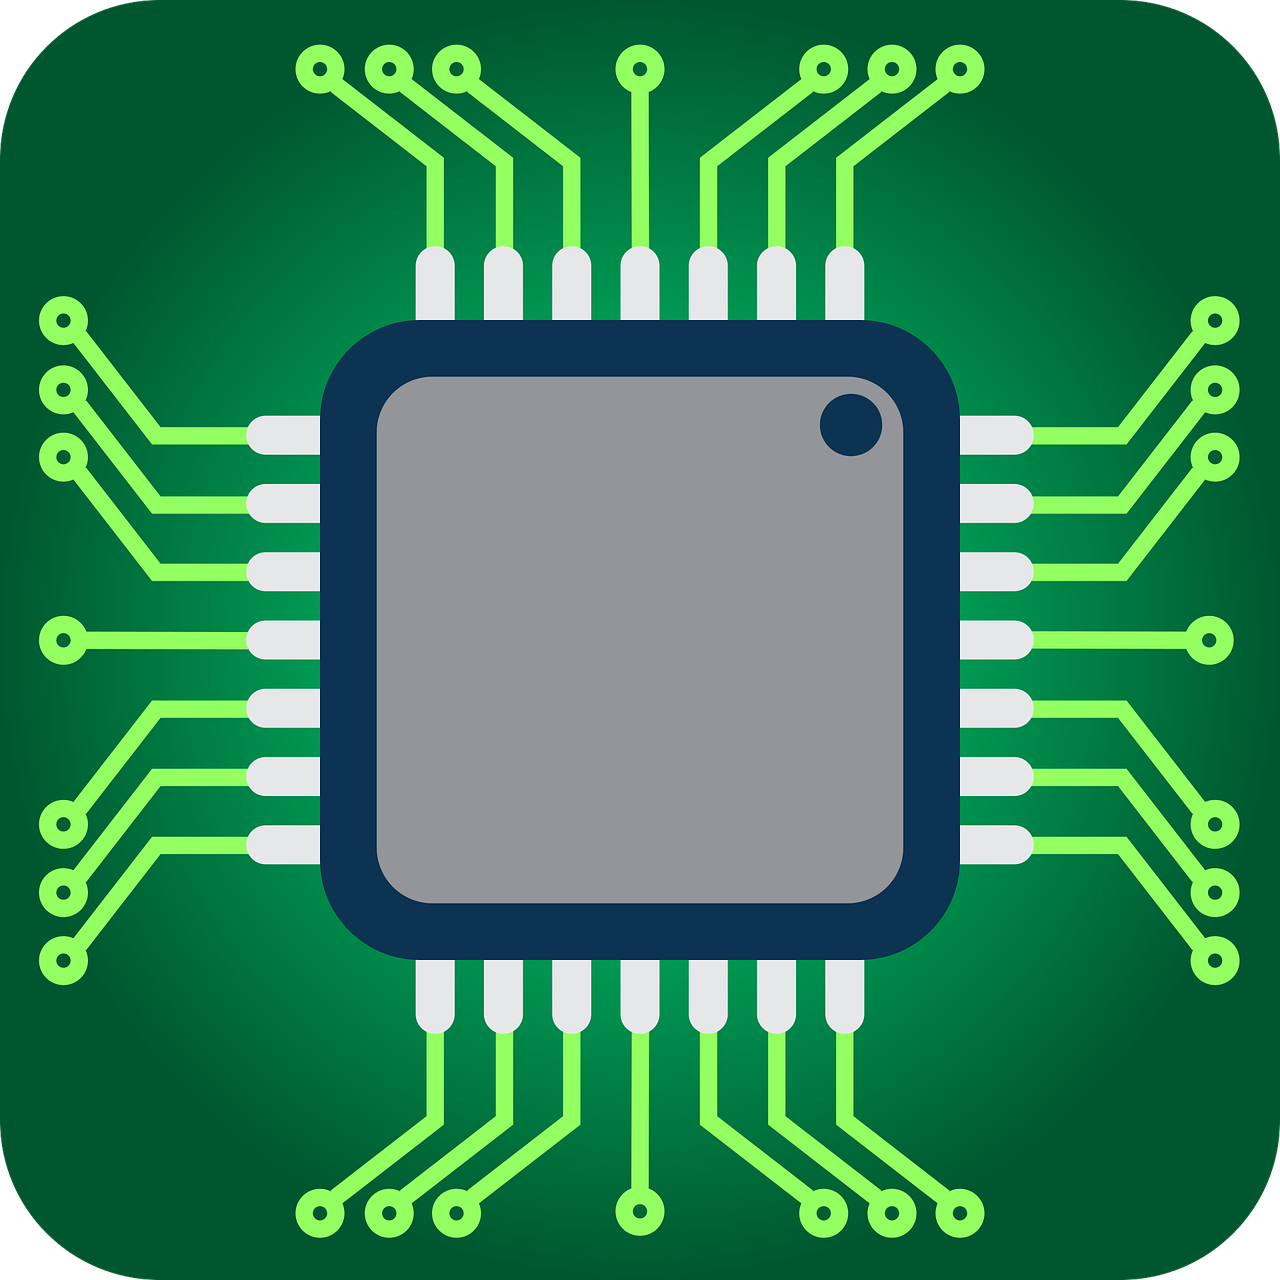 Imagen que representa un circuito electrónico, que puede ser un microcontrolador